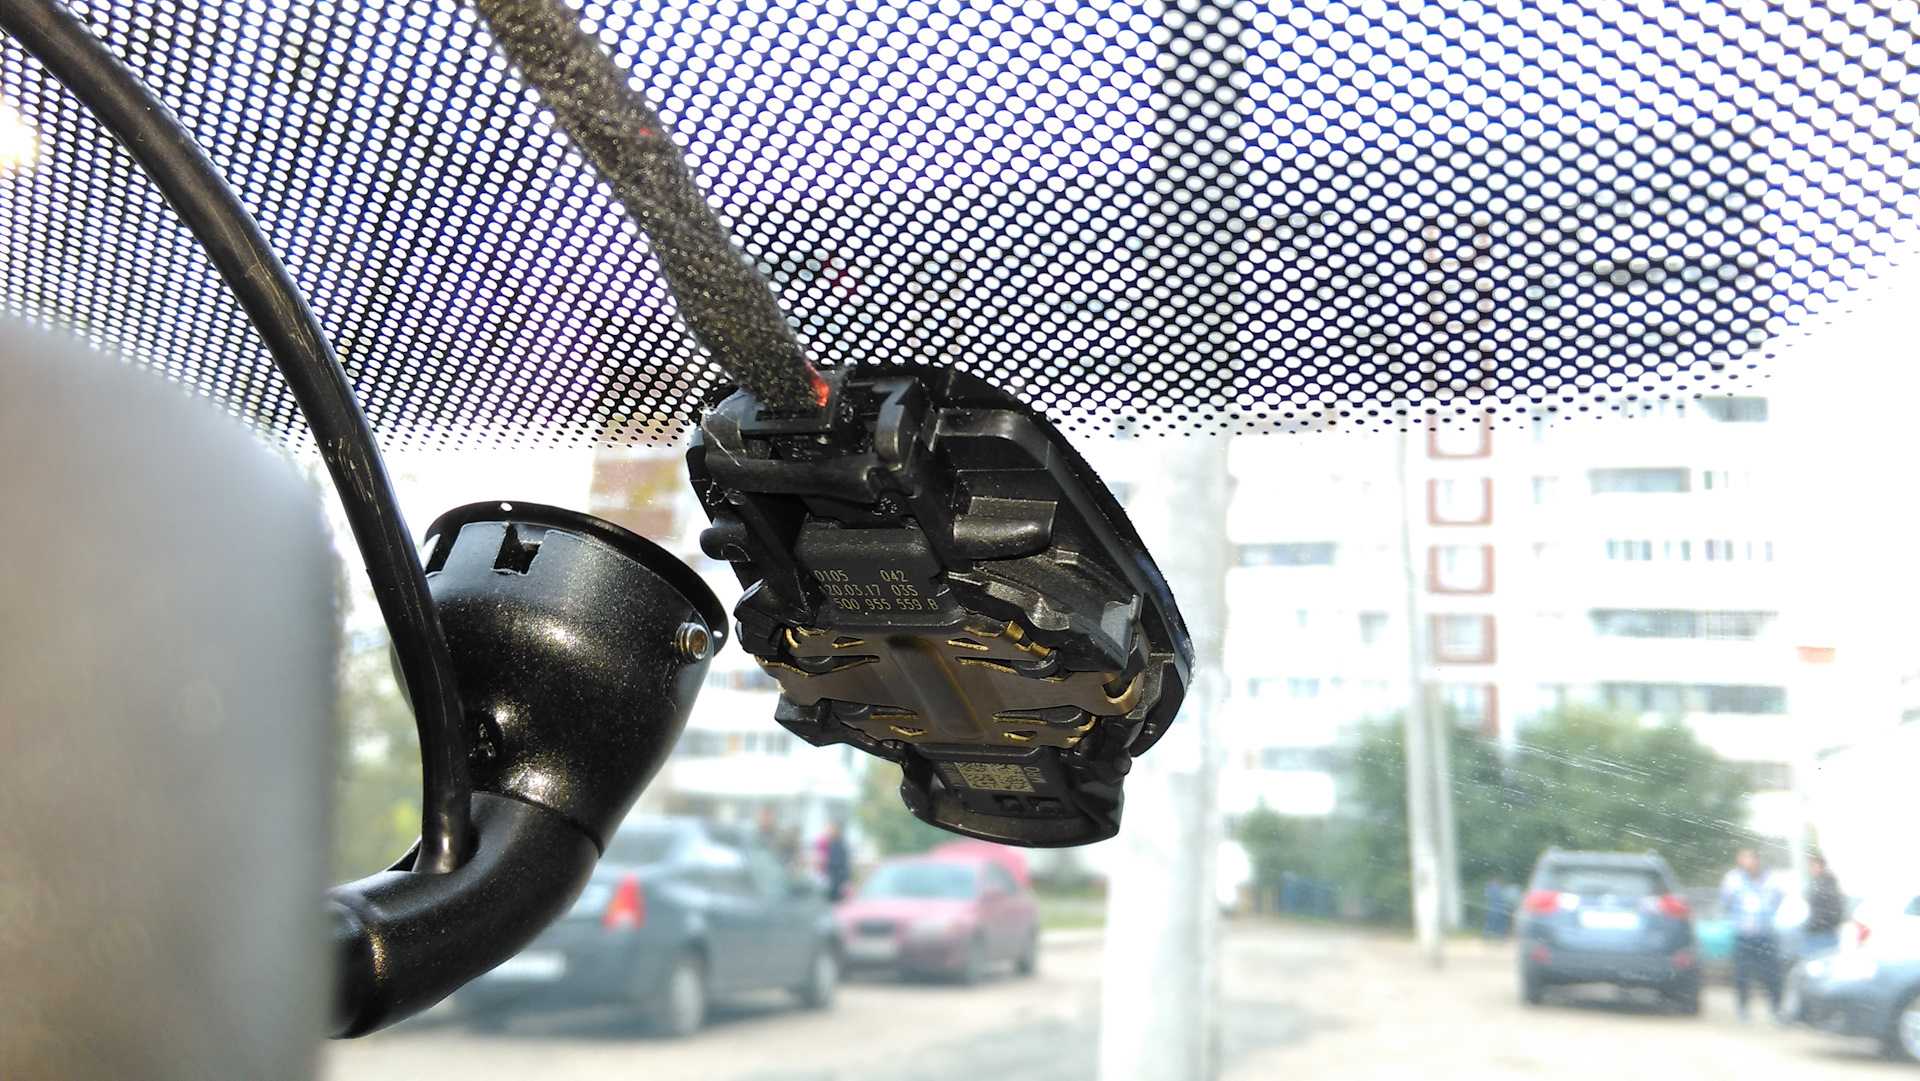 Почему не работает датчик дождя? - блог - купить шины в москве